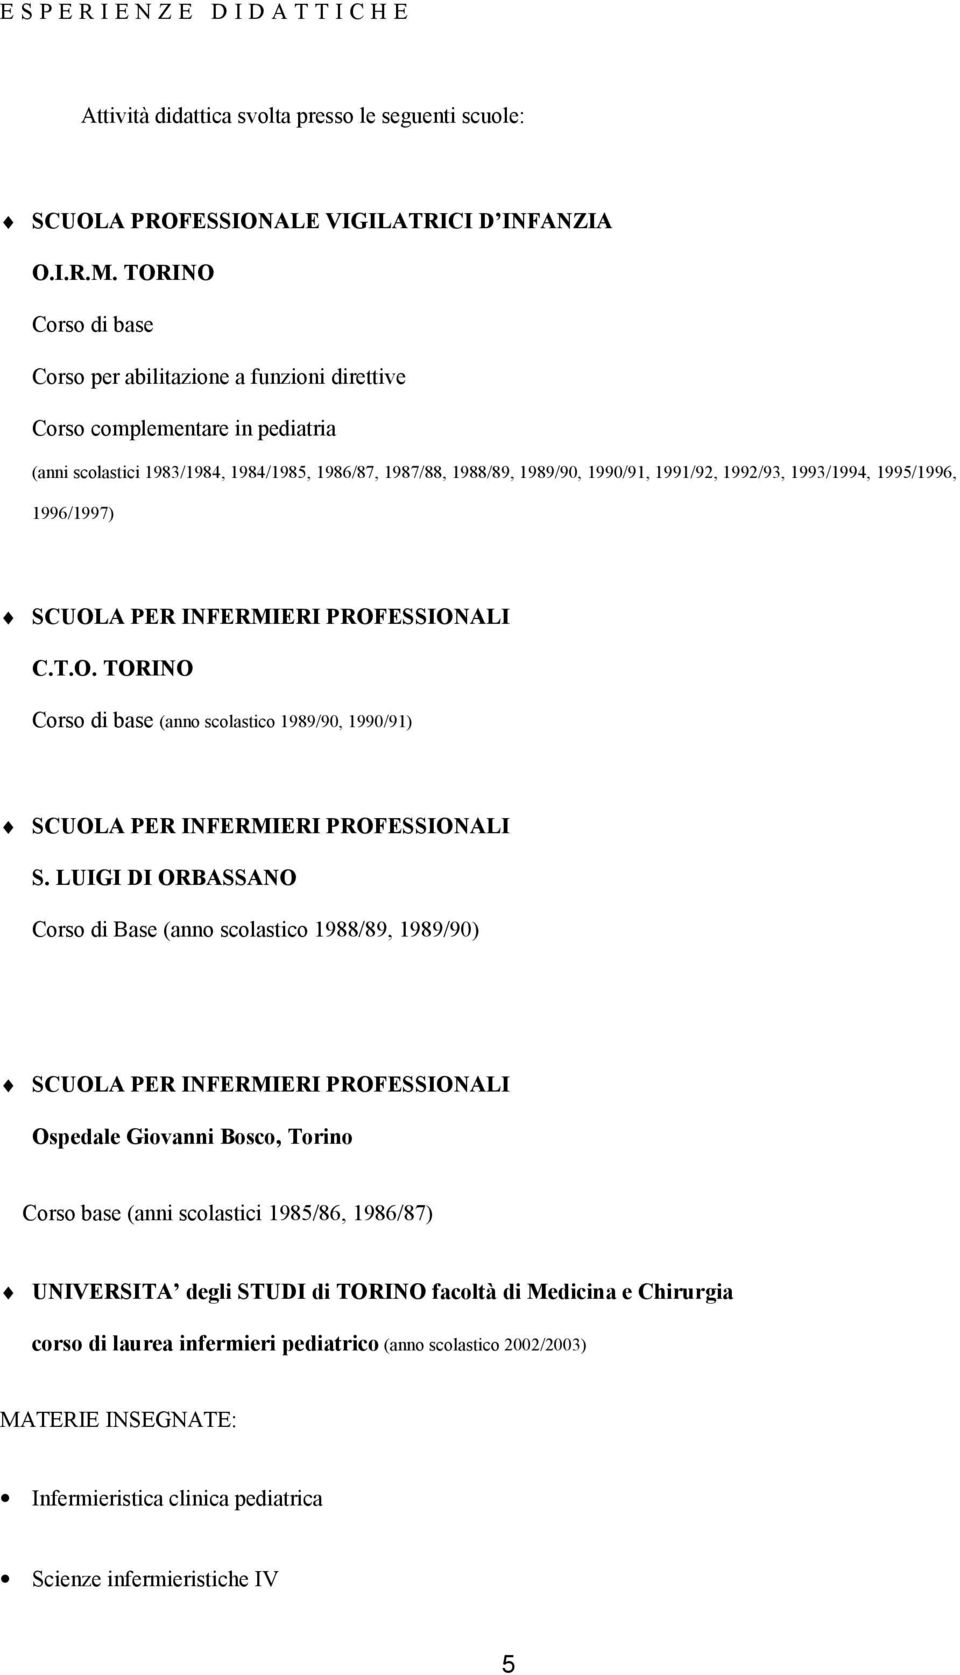 1993/1994, 1995/1996, 1996/1997) SCUOLA PER INFERMIERI PROFESSIONALI C.T.O. TORINO Corso di base (anno scolastico 1989/90, 1990/91) SCUOLA PER INFERMIERI PROFESSIONALI S.